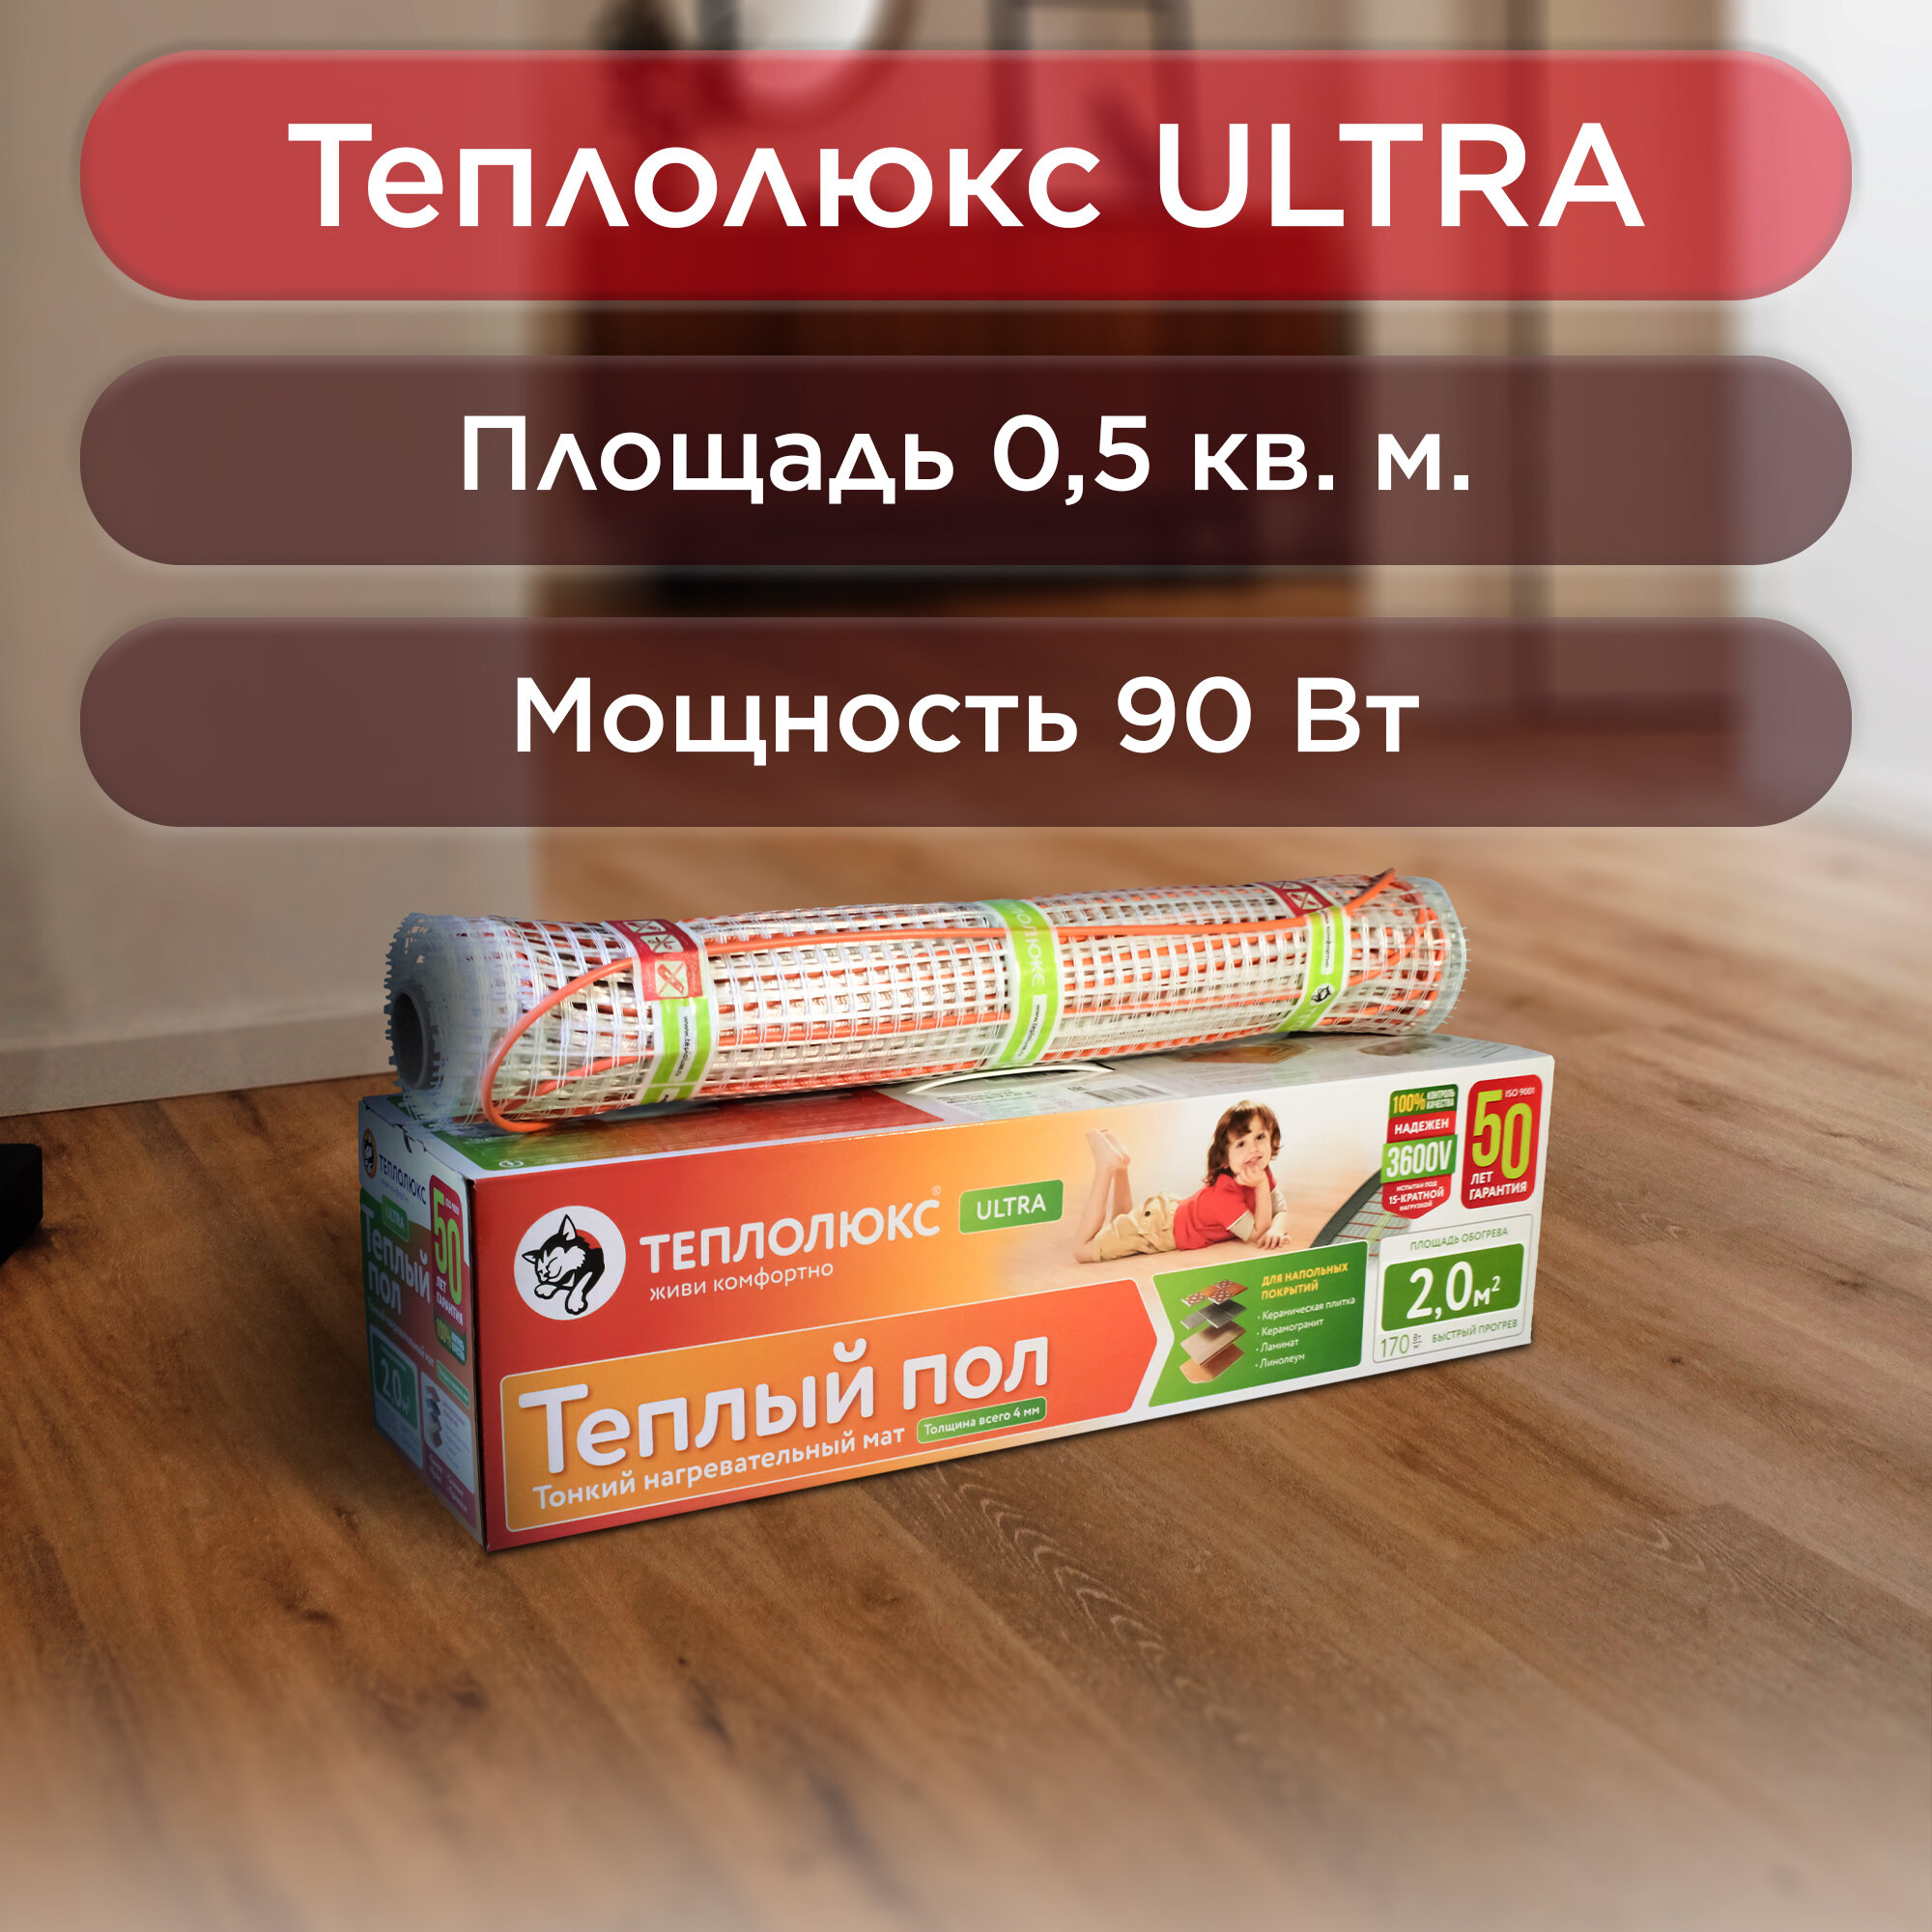 Нагревательный мат, Теплолюкс ULTRA MHH 90 Вт/ 0,5 кв.м.